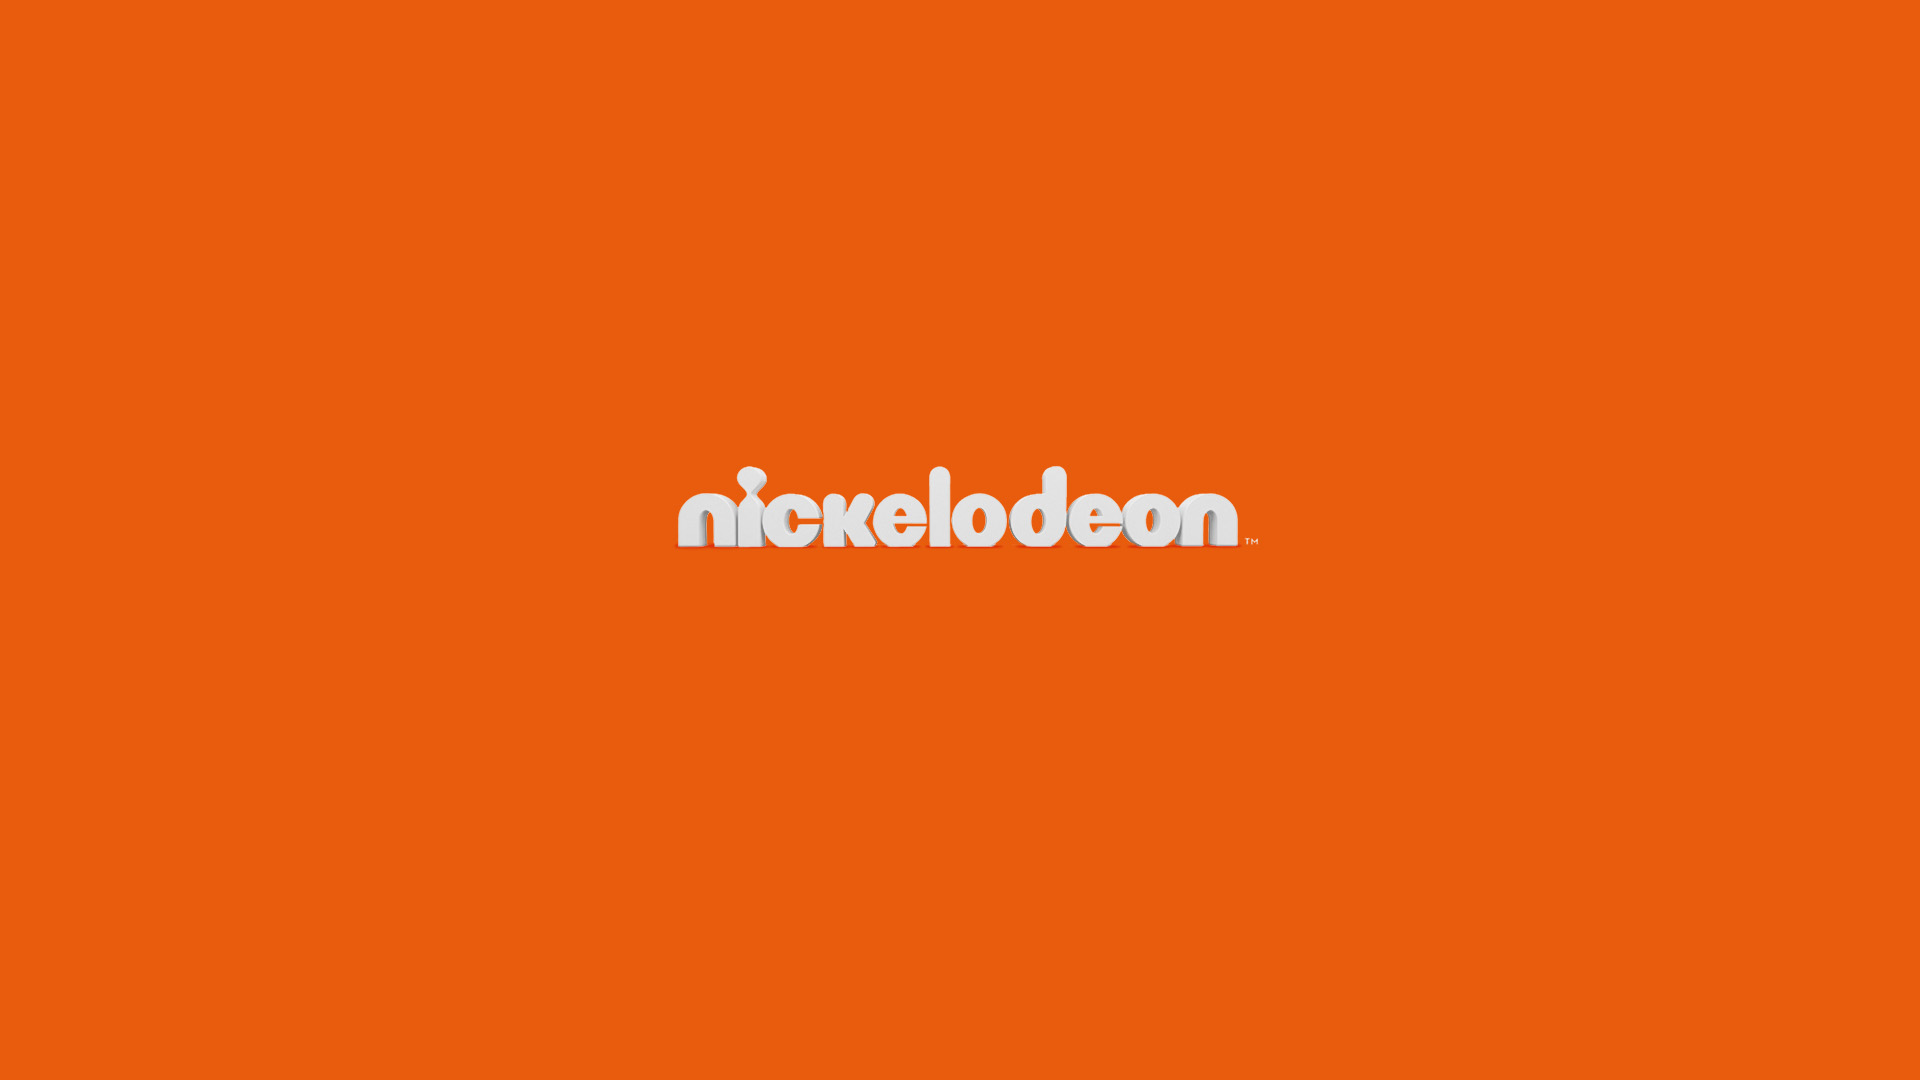 Nickelodeon Slider